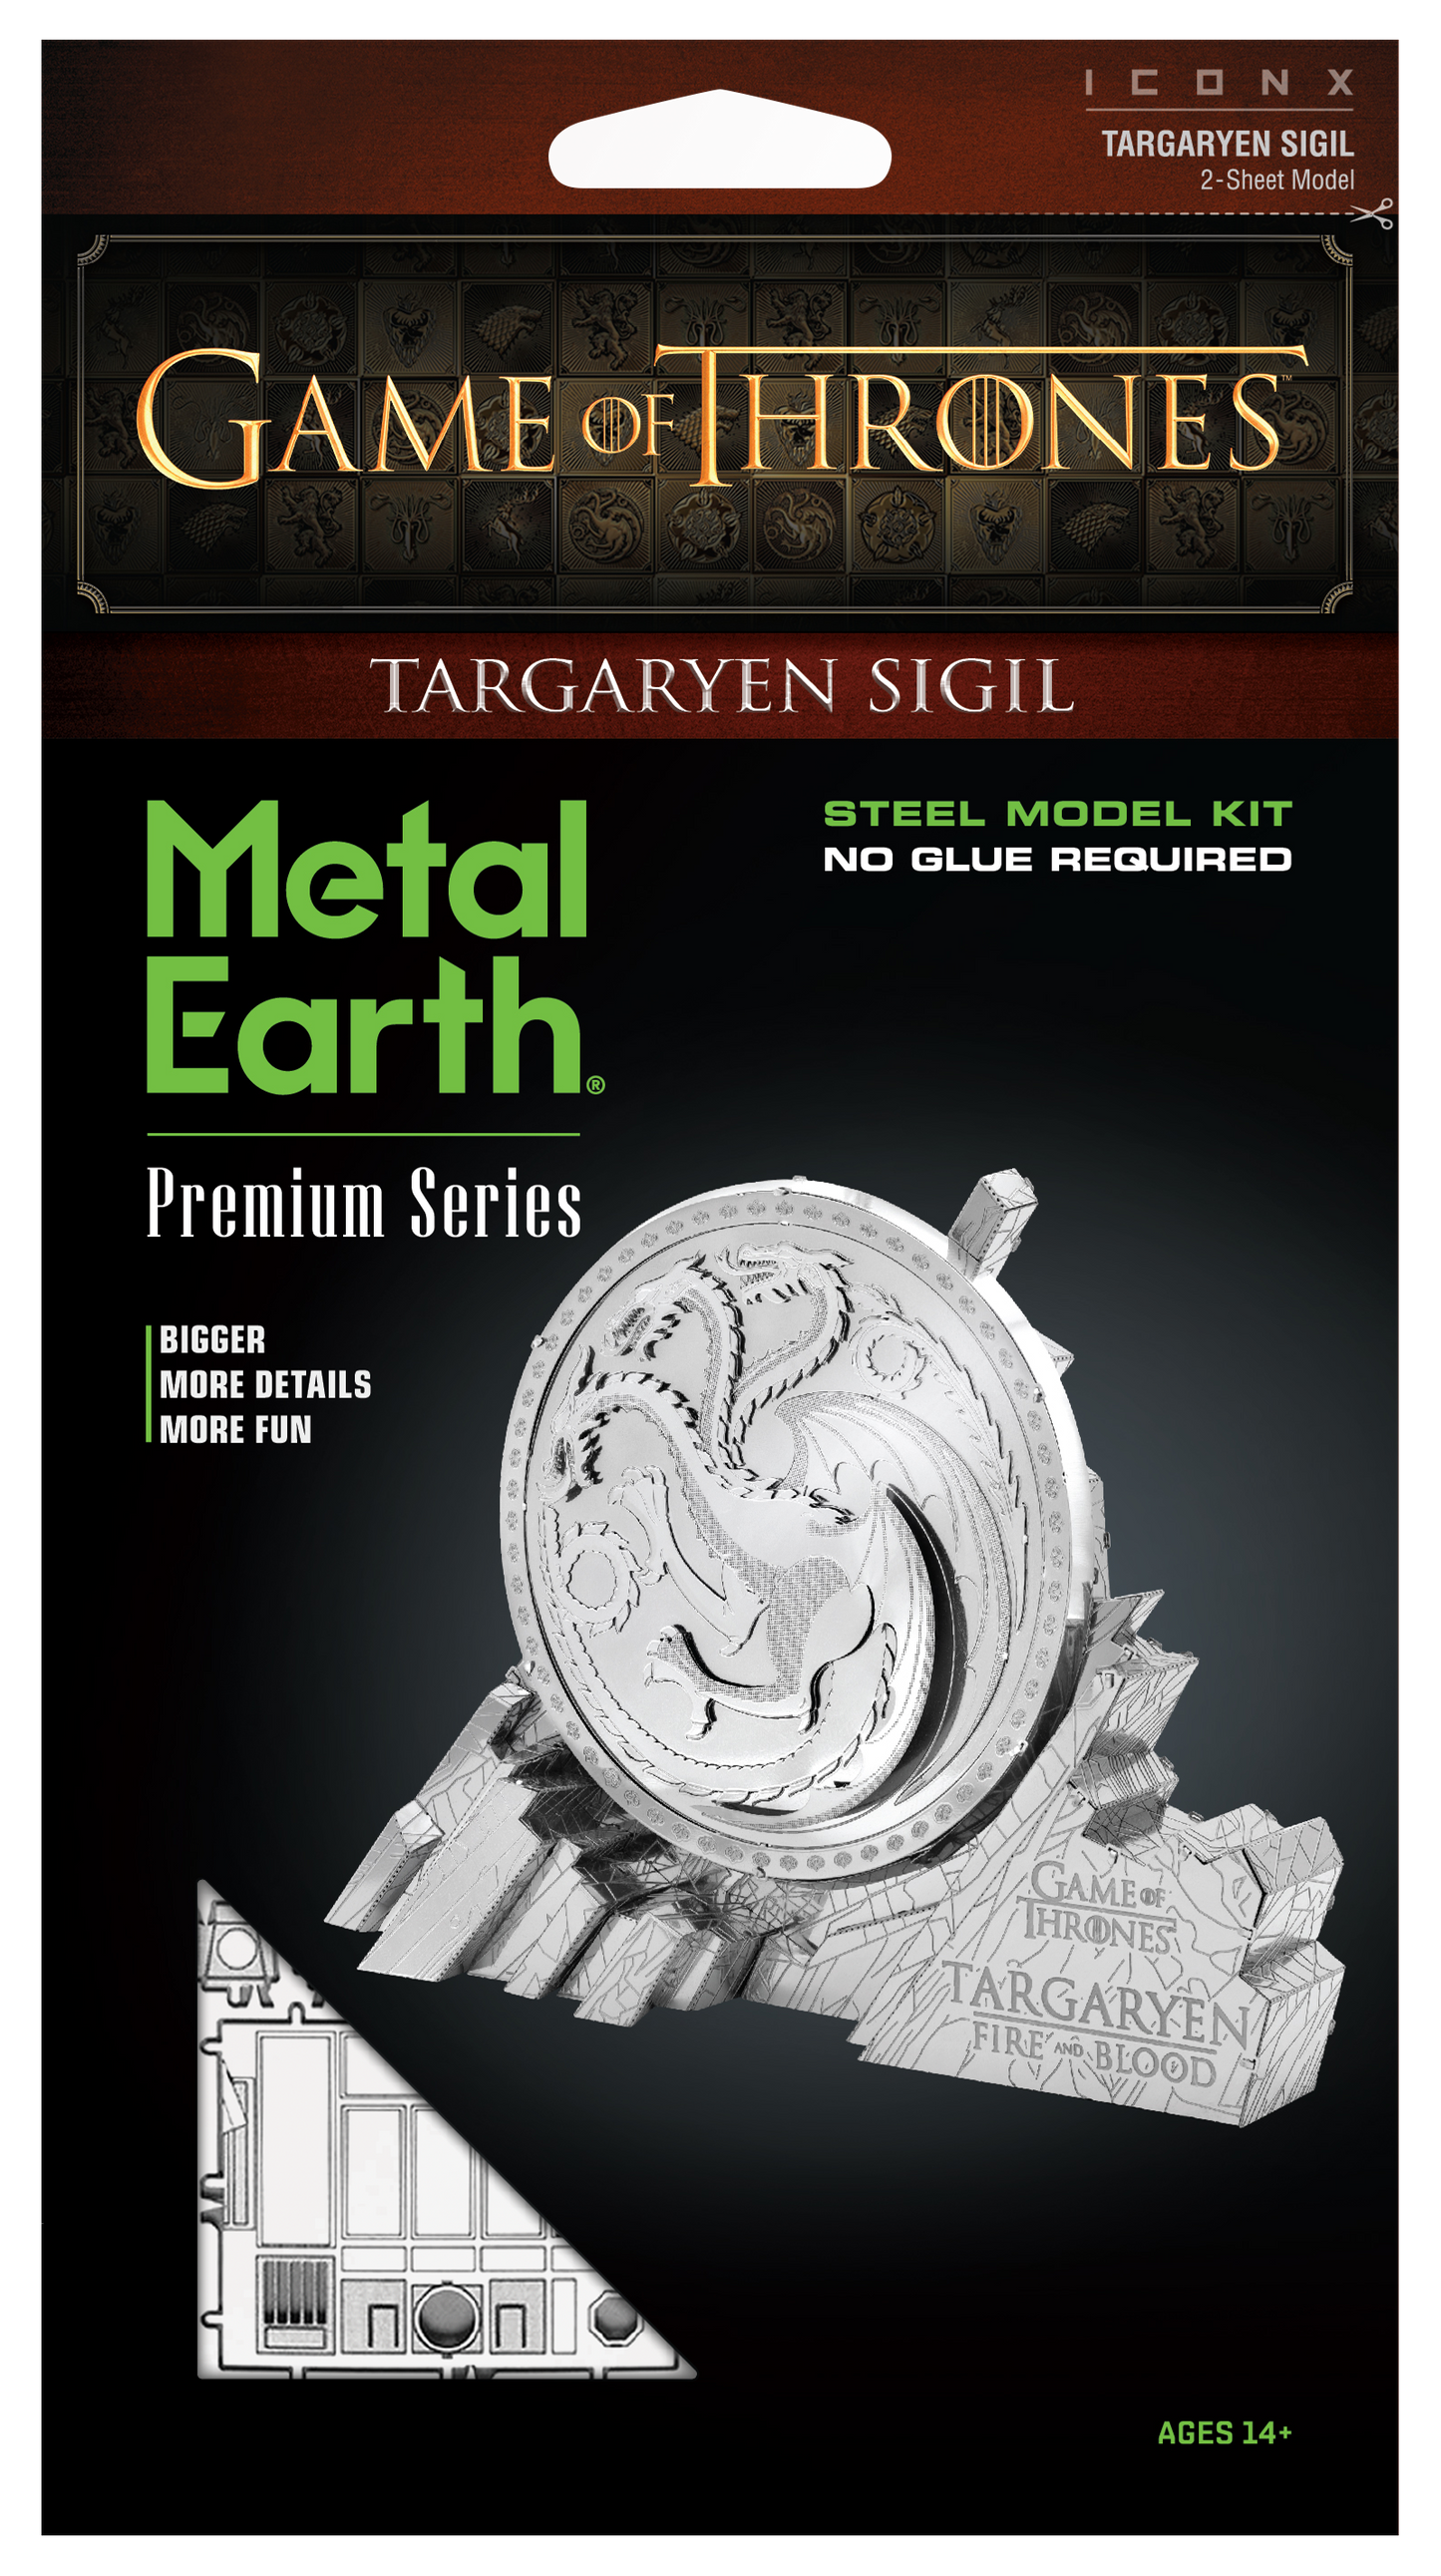 Metal Earth Iconx - Game of Thrones - Targaryen Sigil